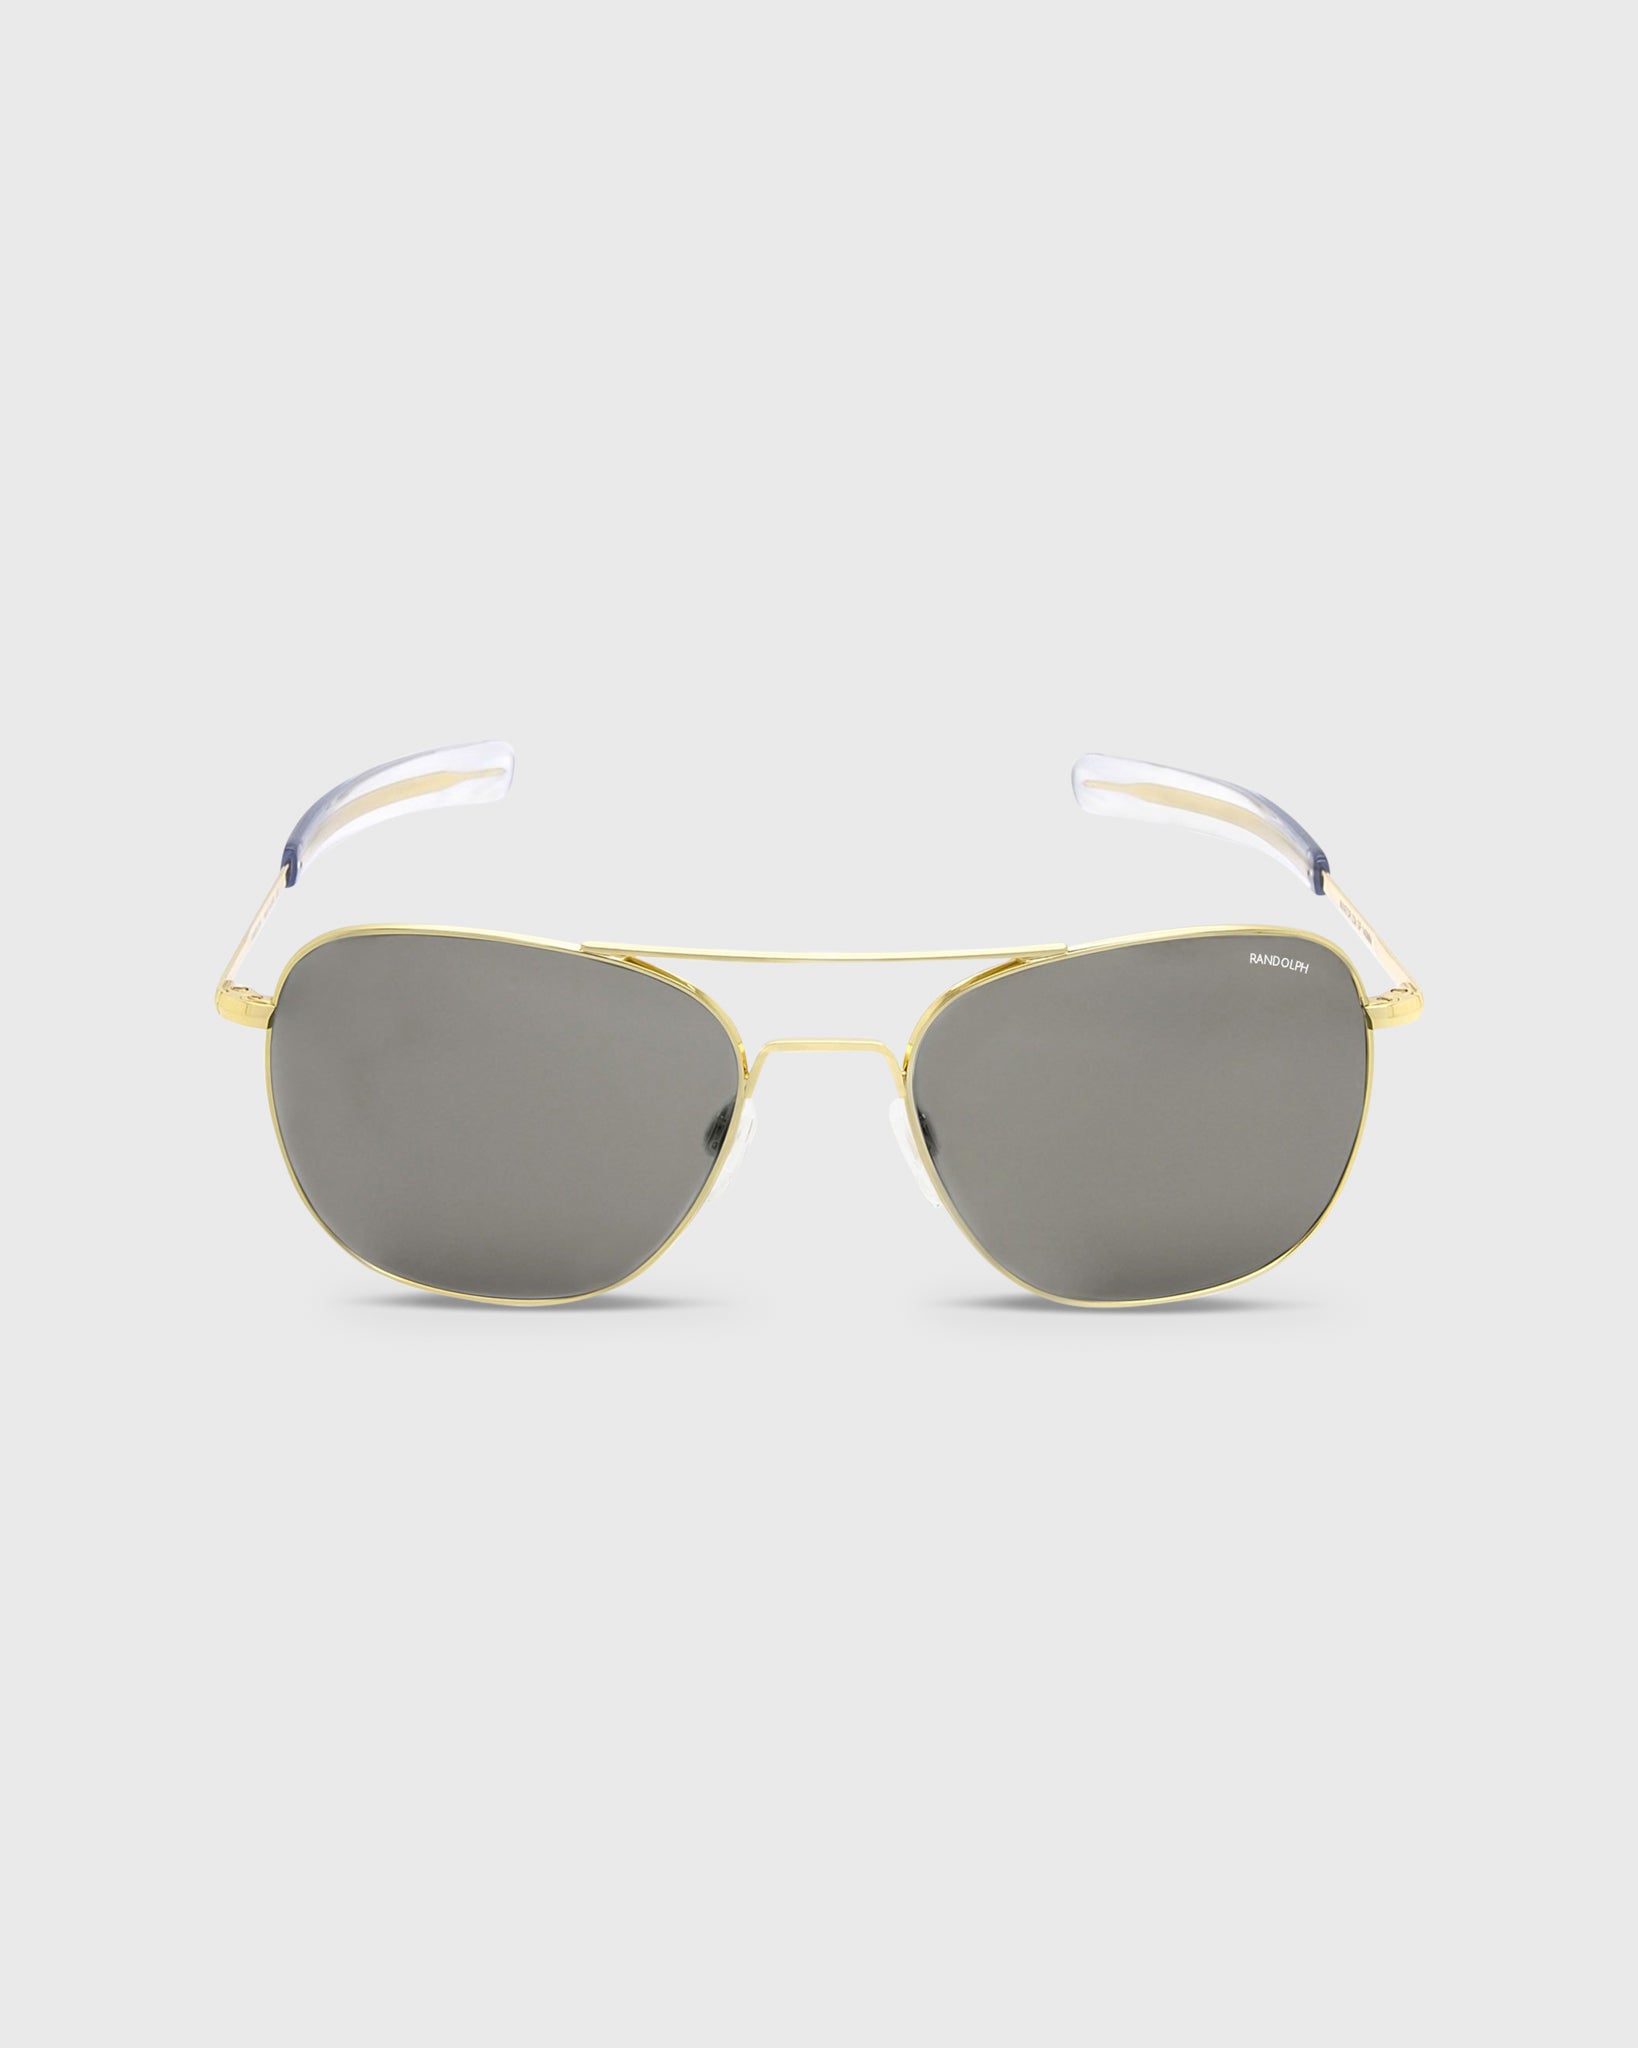 Aviator Sunglasses 23K Gold/Gray Glass Lens